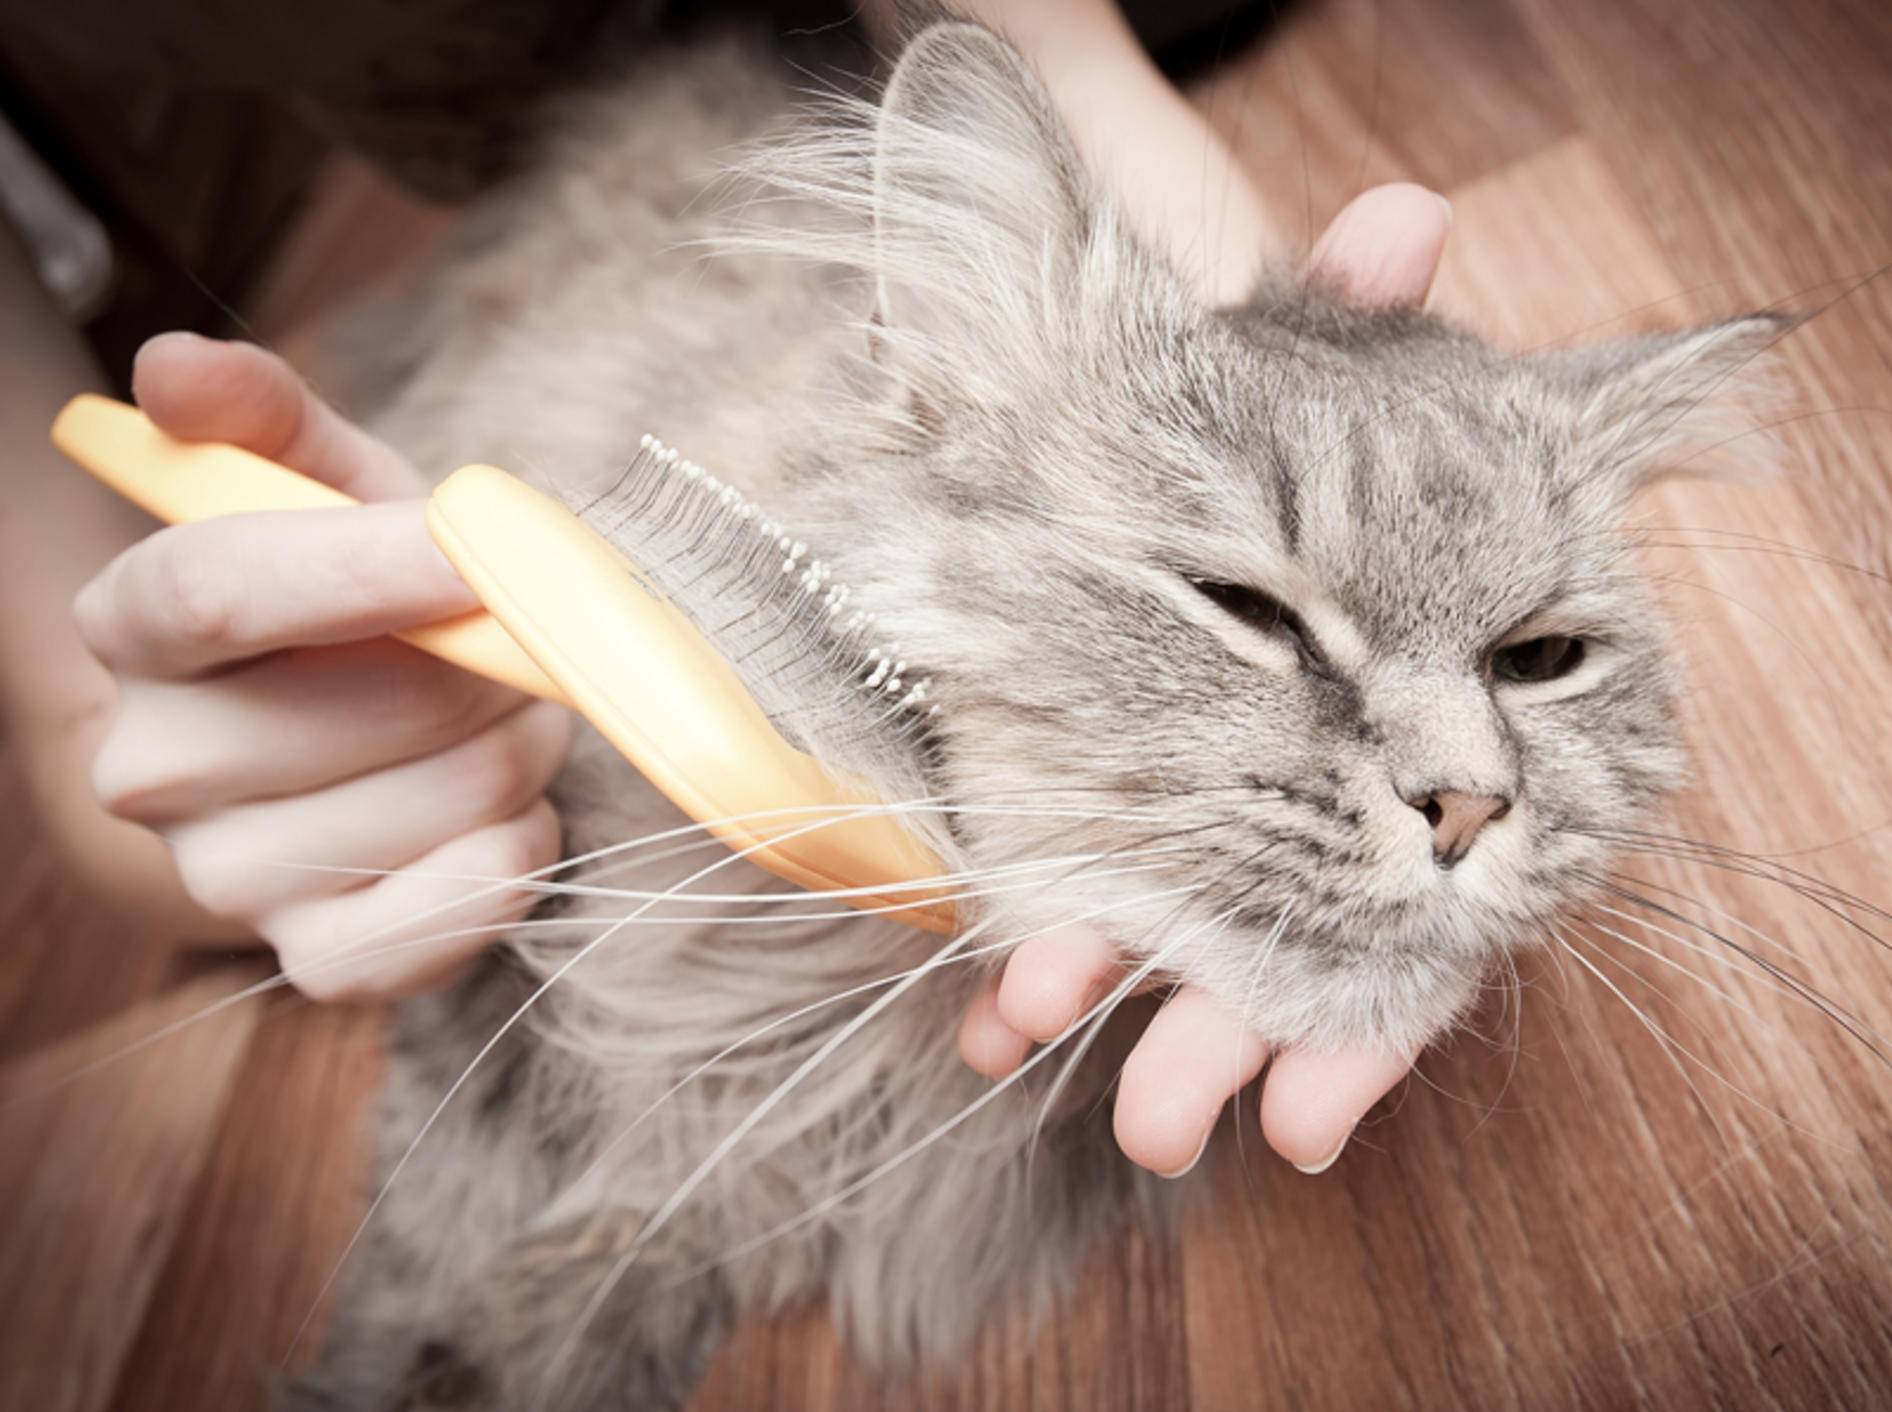 So finden Sie die richtige Bürste für Ihre Katze – Bild: Shutterstock / Telekhovskyi